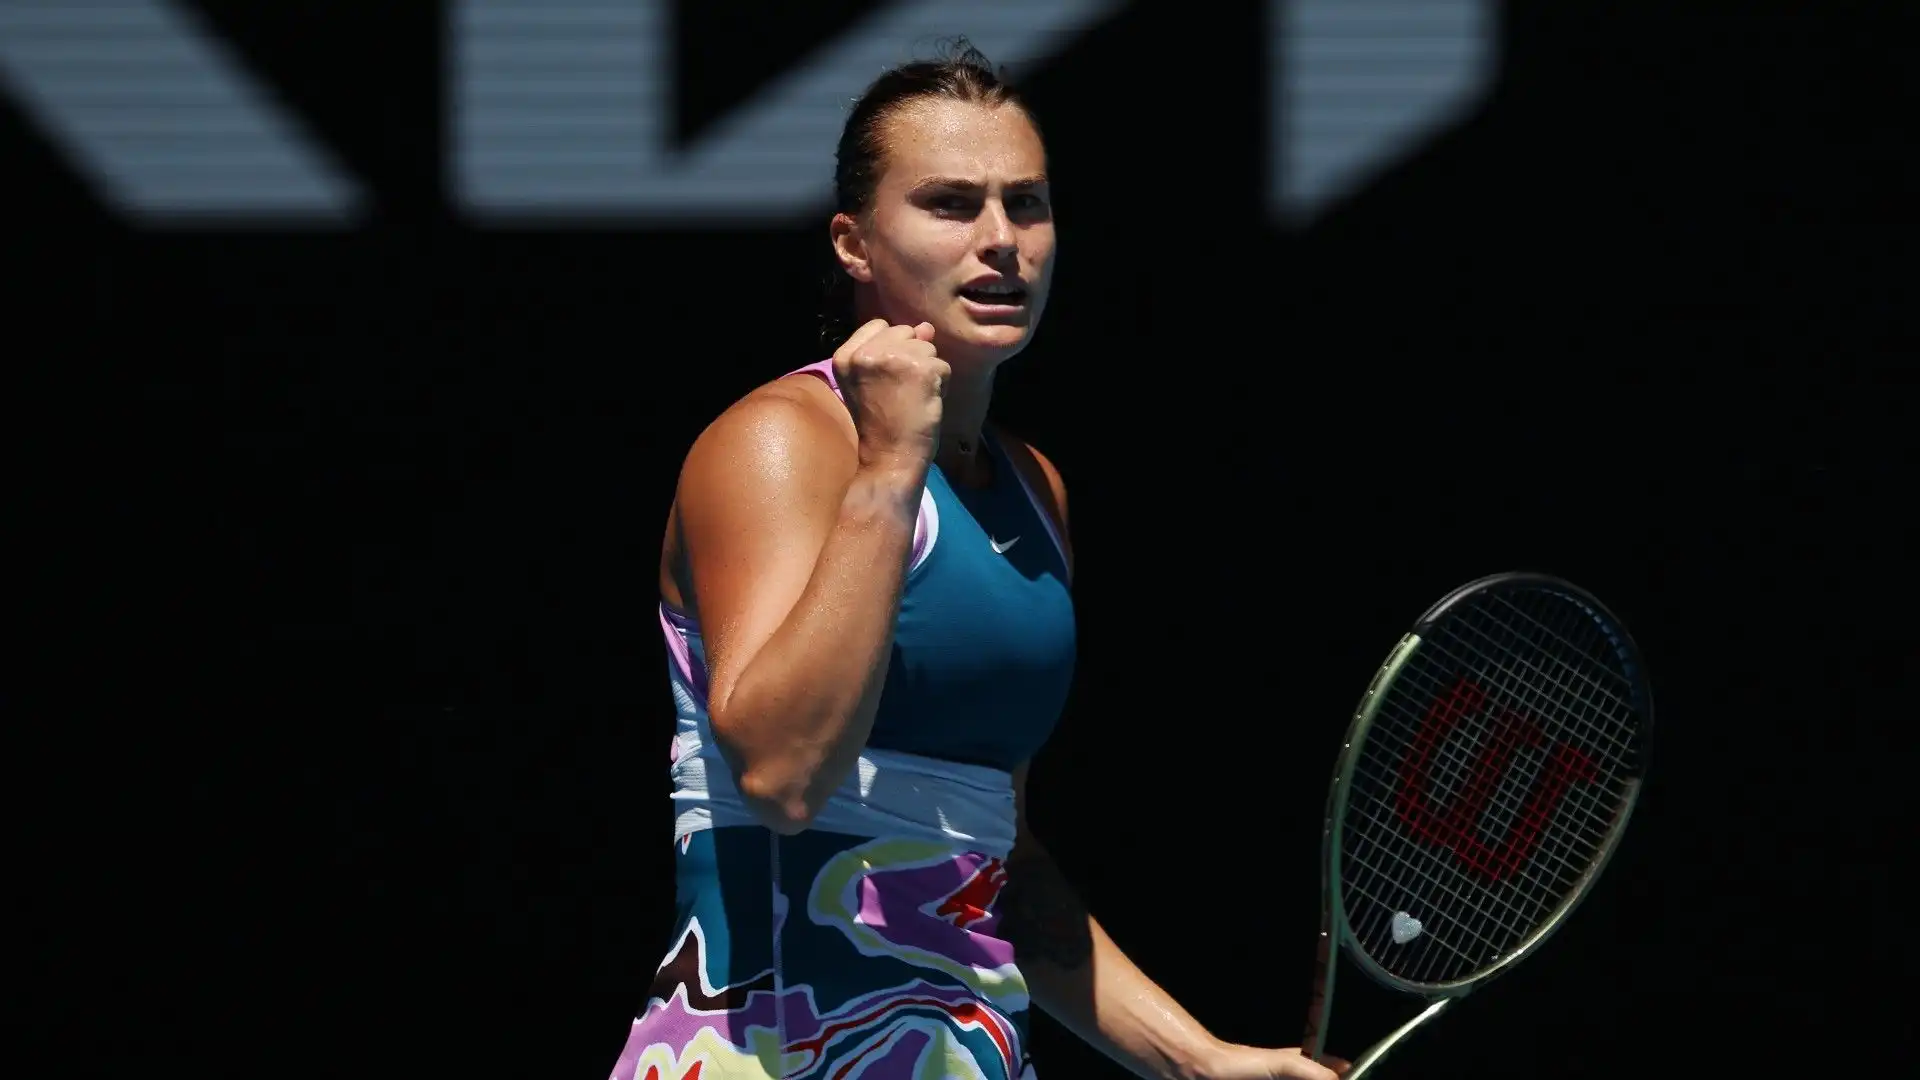 La tennista di Minsk nei quarti di finale del torneo affronterà Donna Veki?